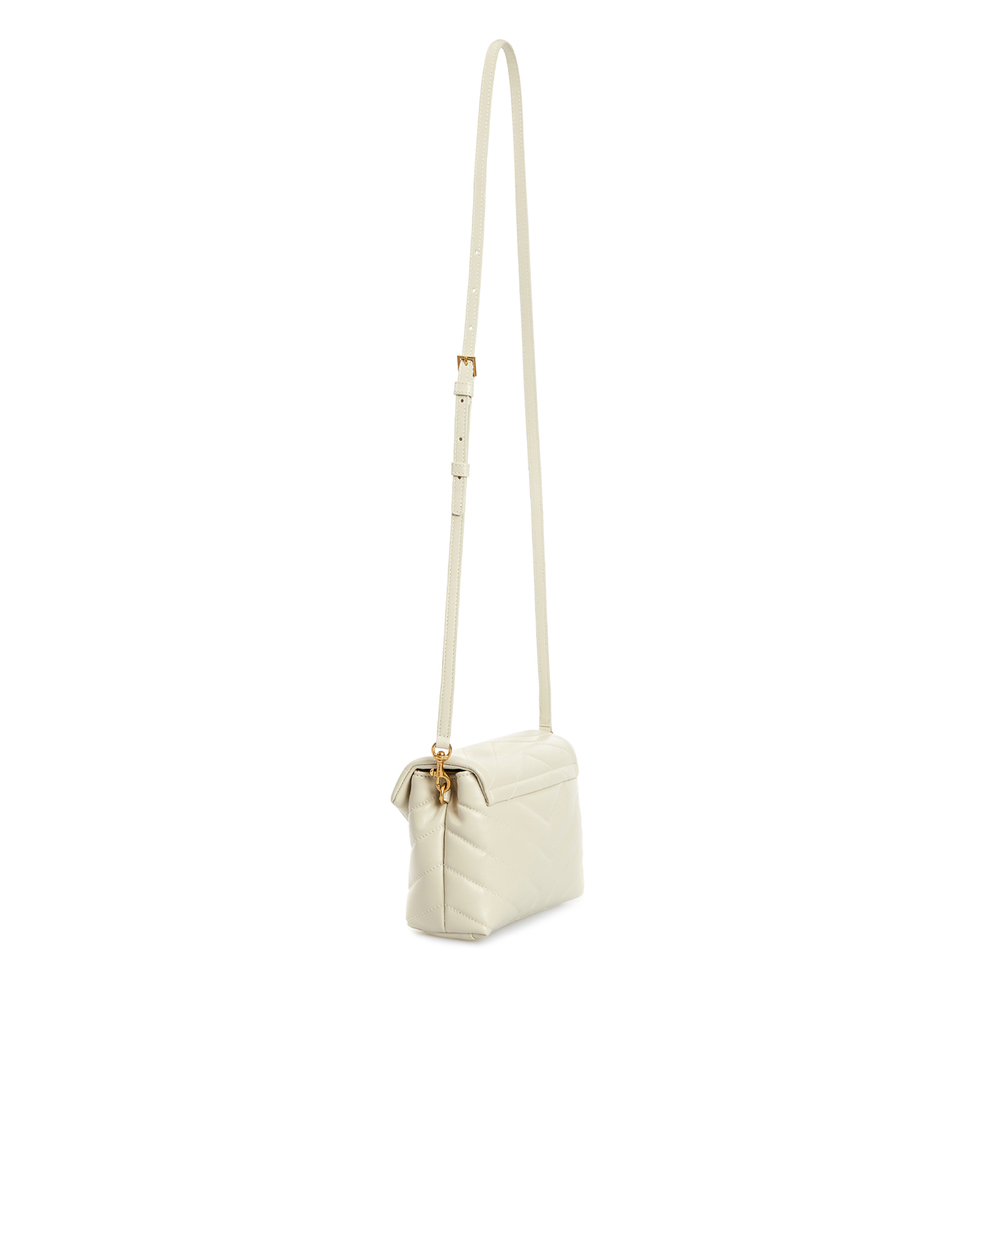 Кожаная сумка Loulou Toy Saint Laurent 678401-DV707, белый цвет • Купить в интернет-магазине Kameron